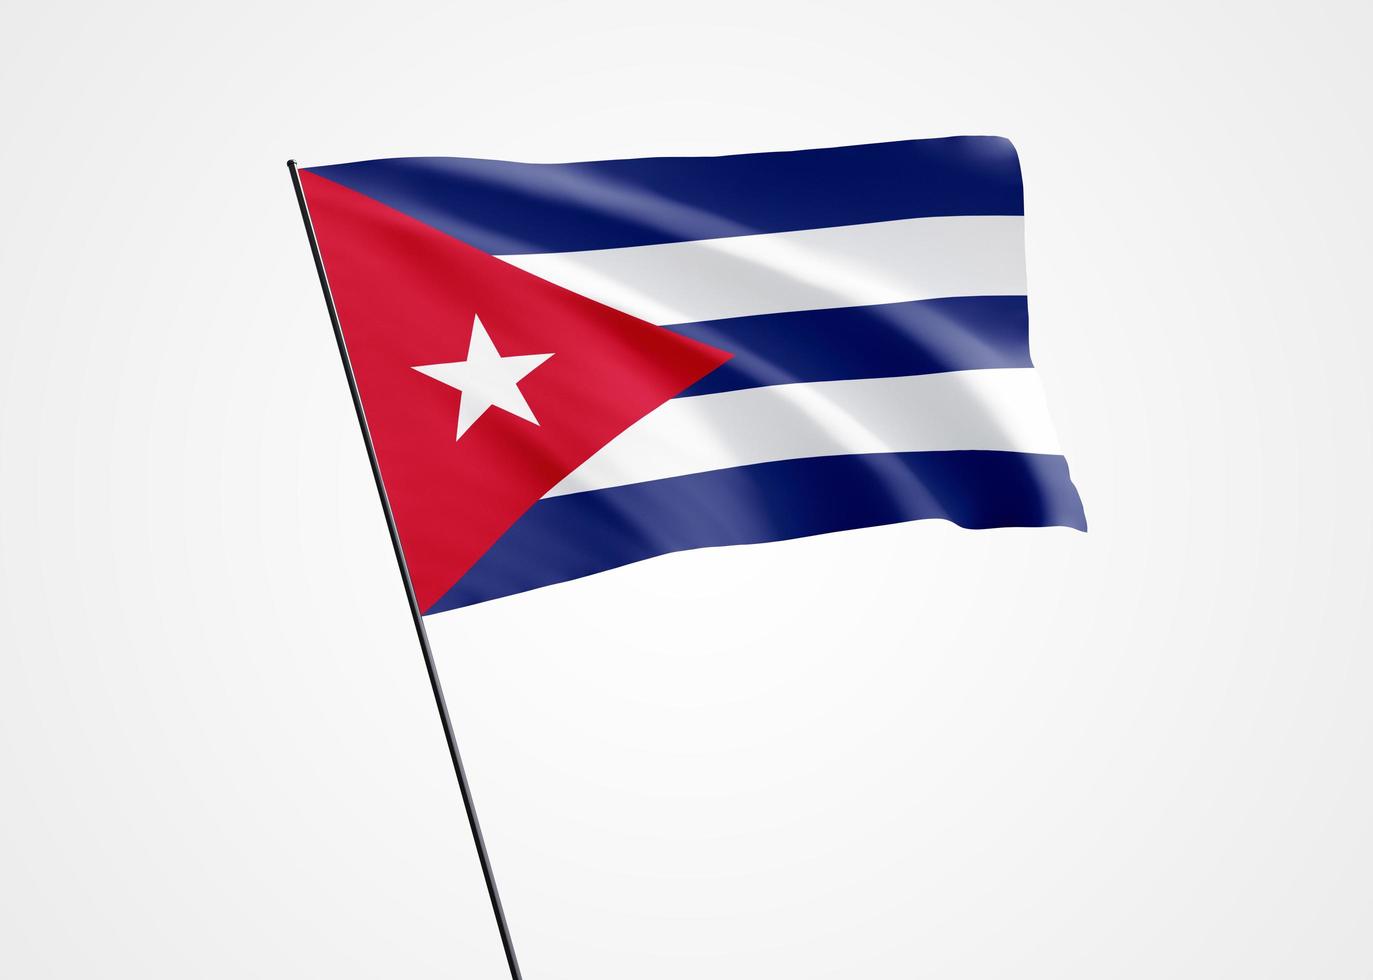 Kuba-Flagge, die hoch im weißen, isolierten Hintergrund fliegt. 20. mai kuba unabhängigkeitstag weltnationalflaggensammlung weltnationalflaggensammlung foto